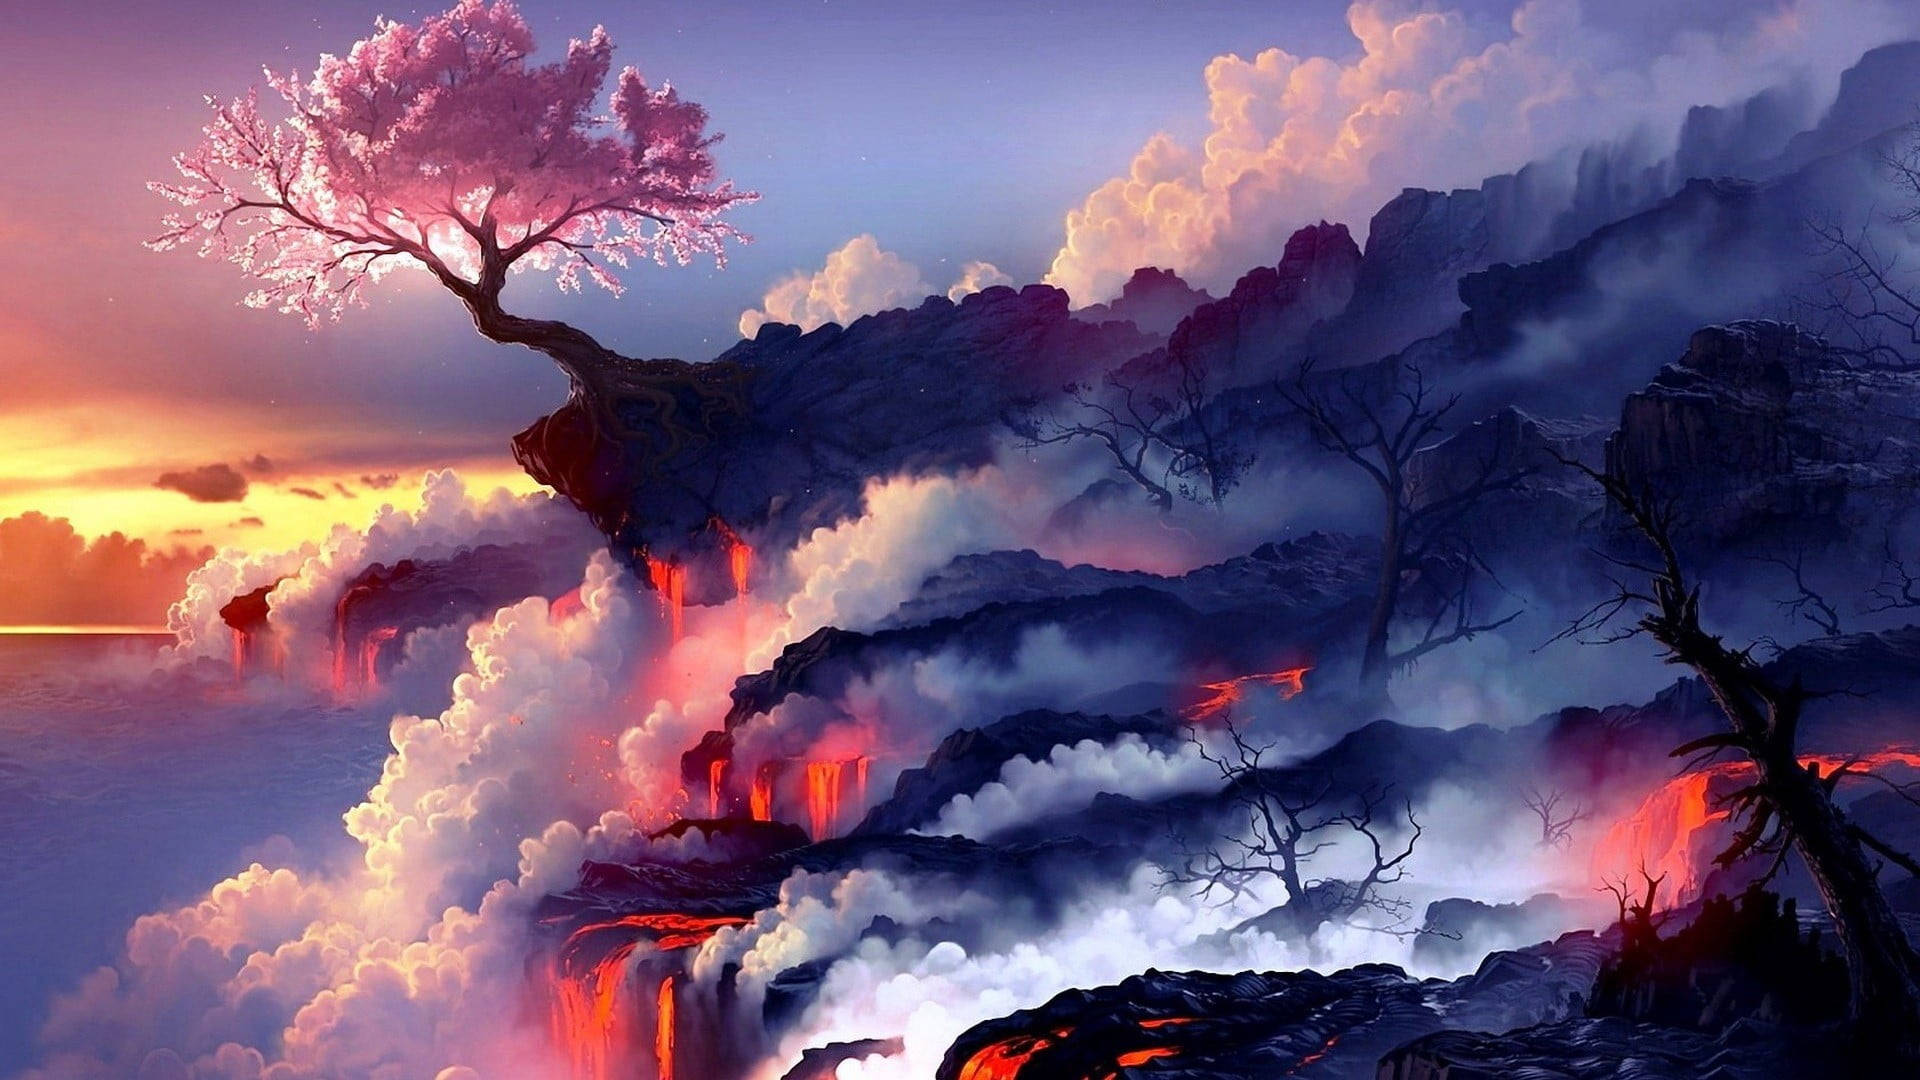 Fire Sunset Digital Art Wallpapers